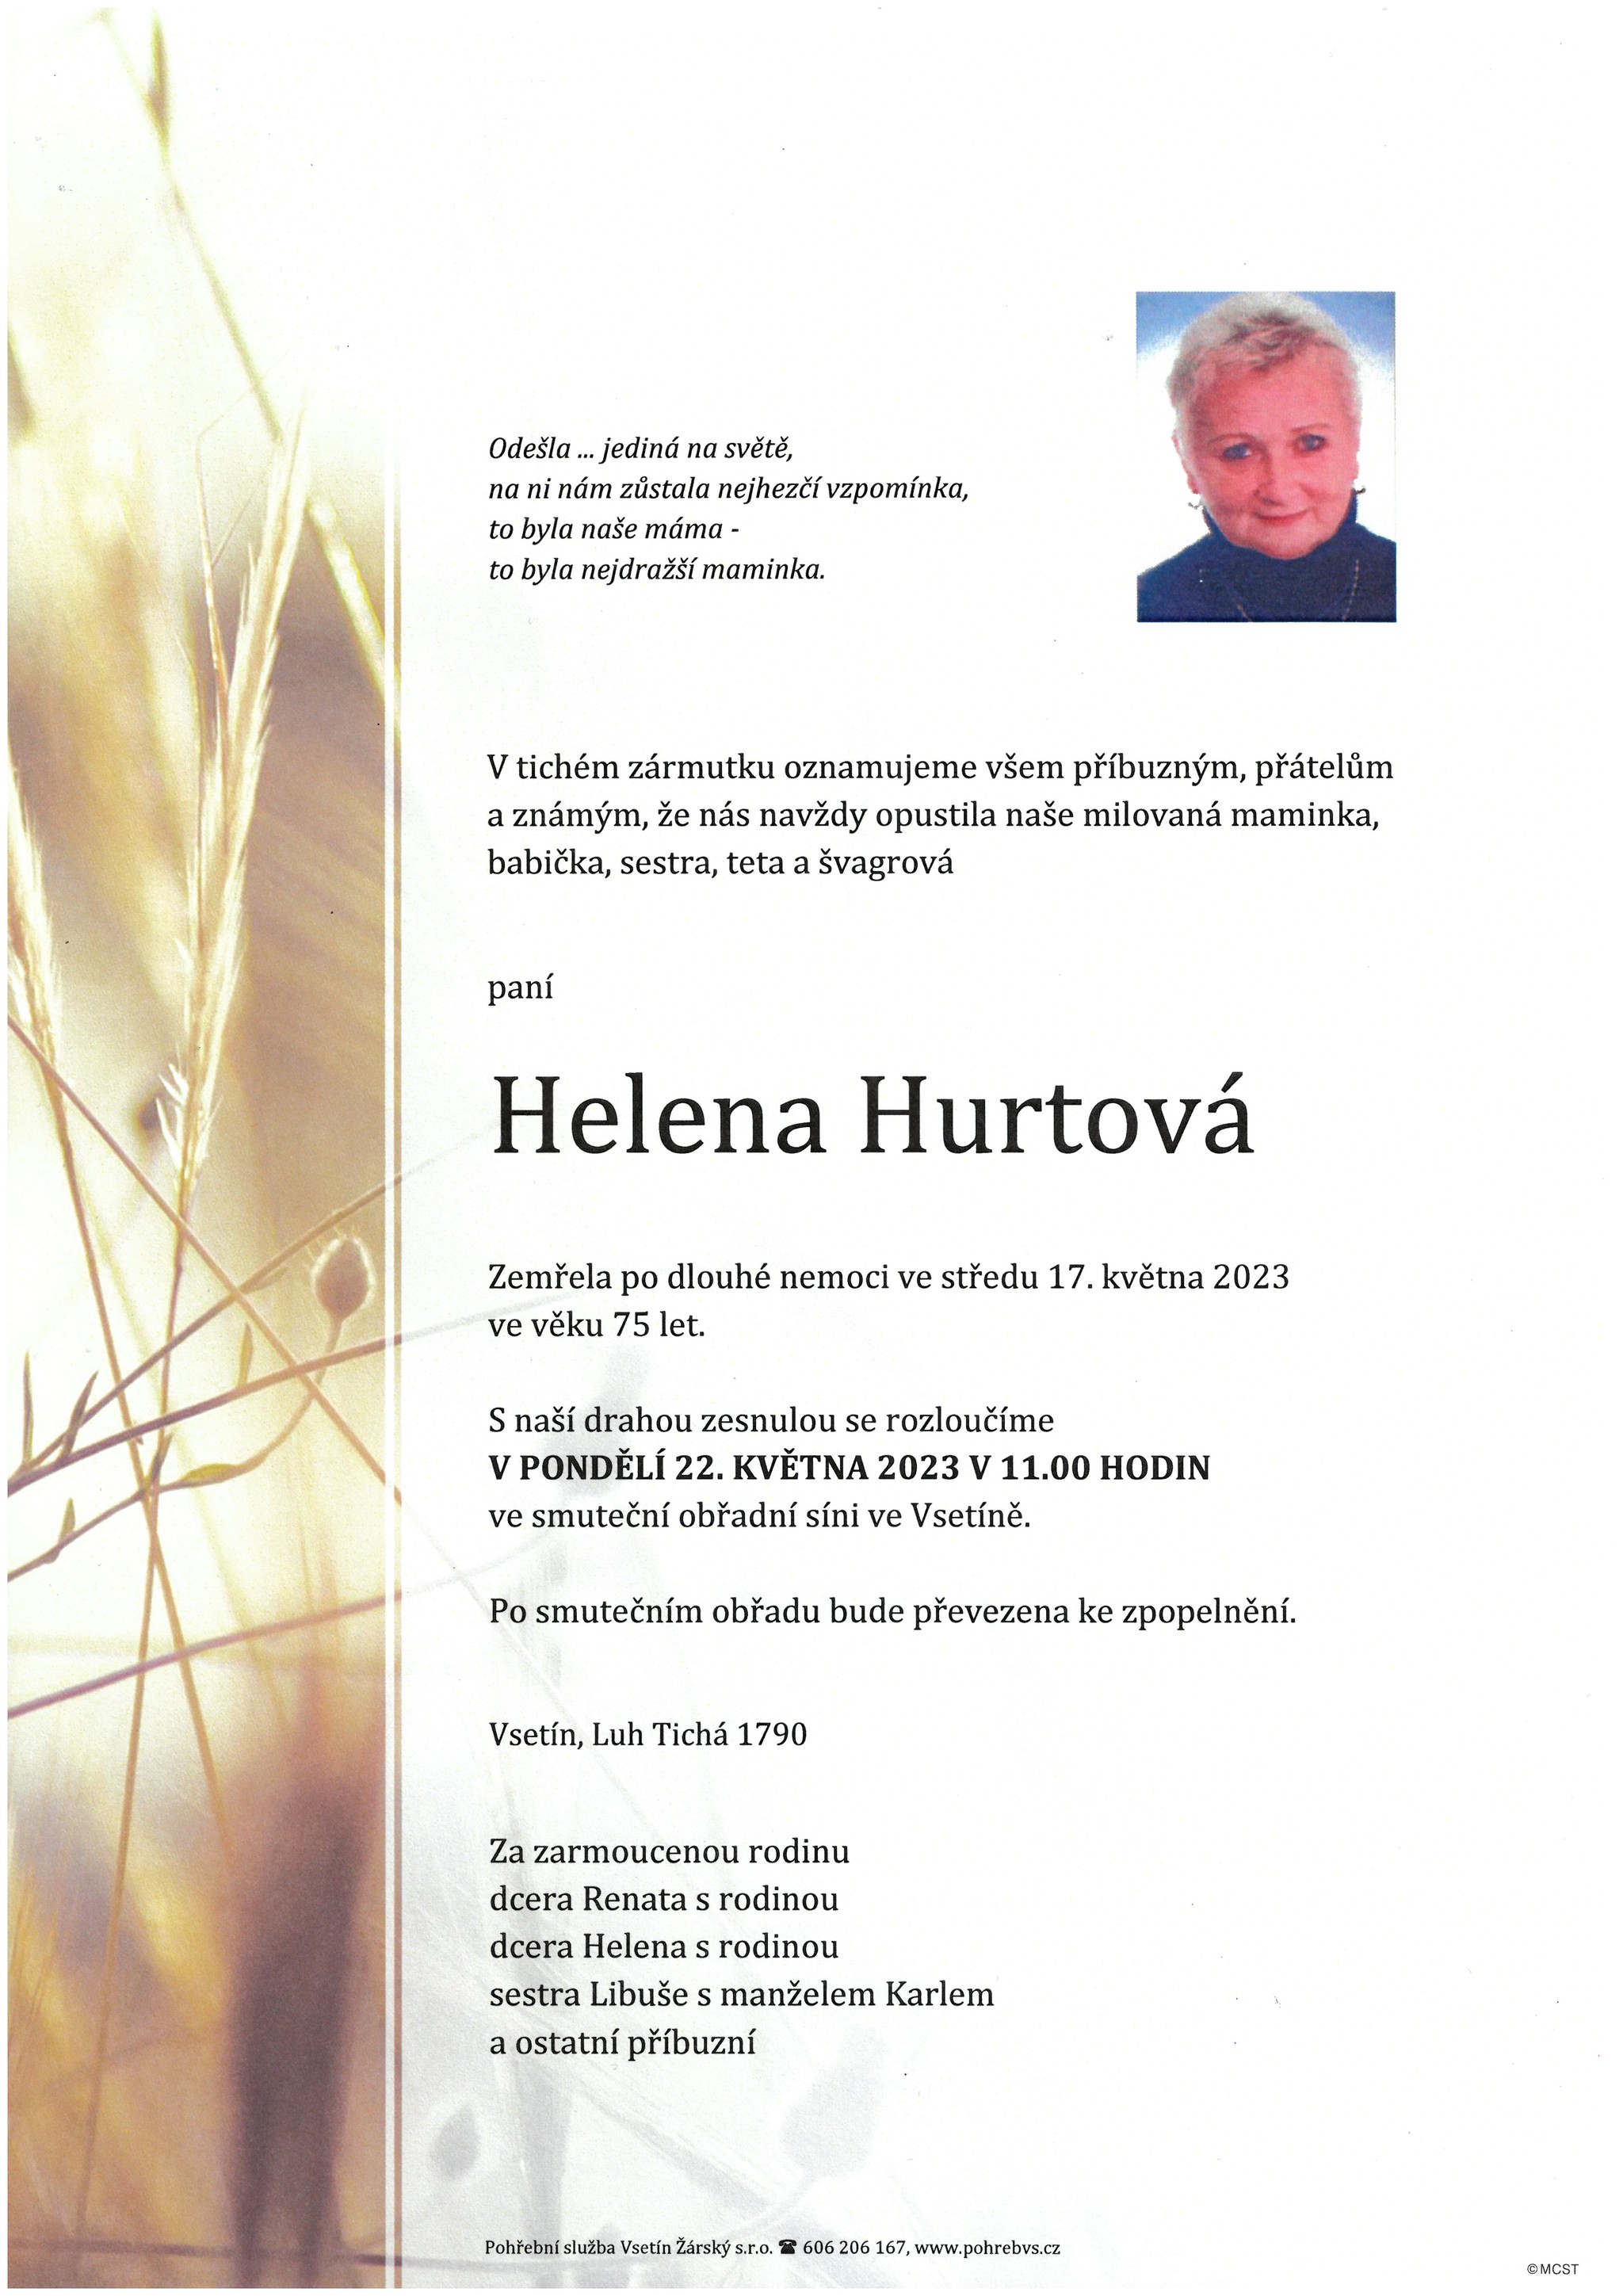 Helena Hurtová